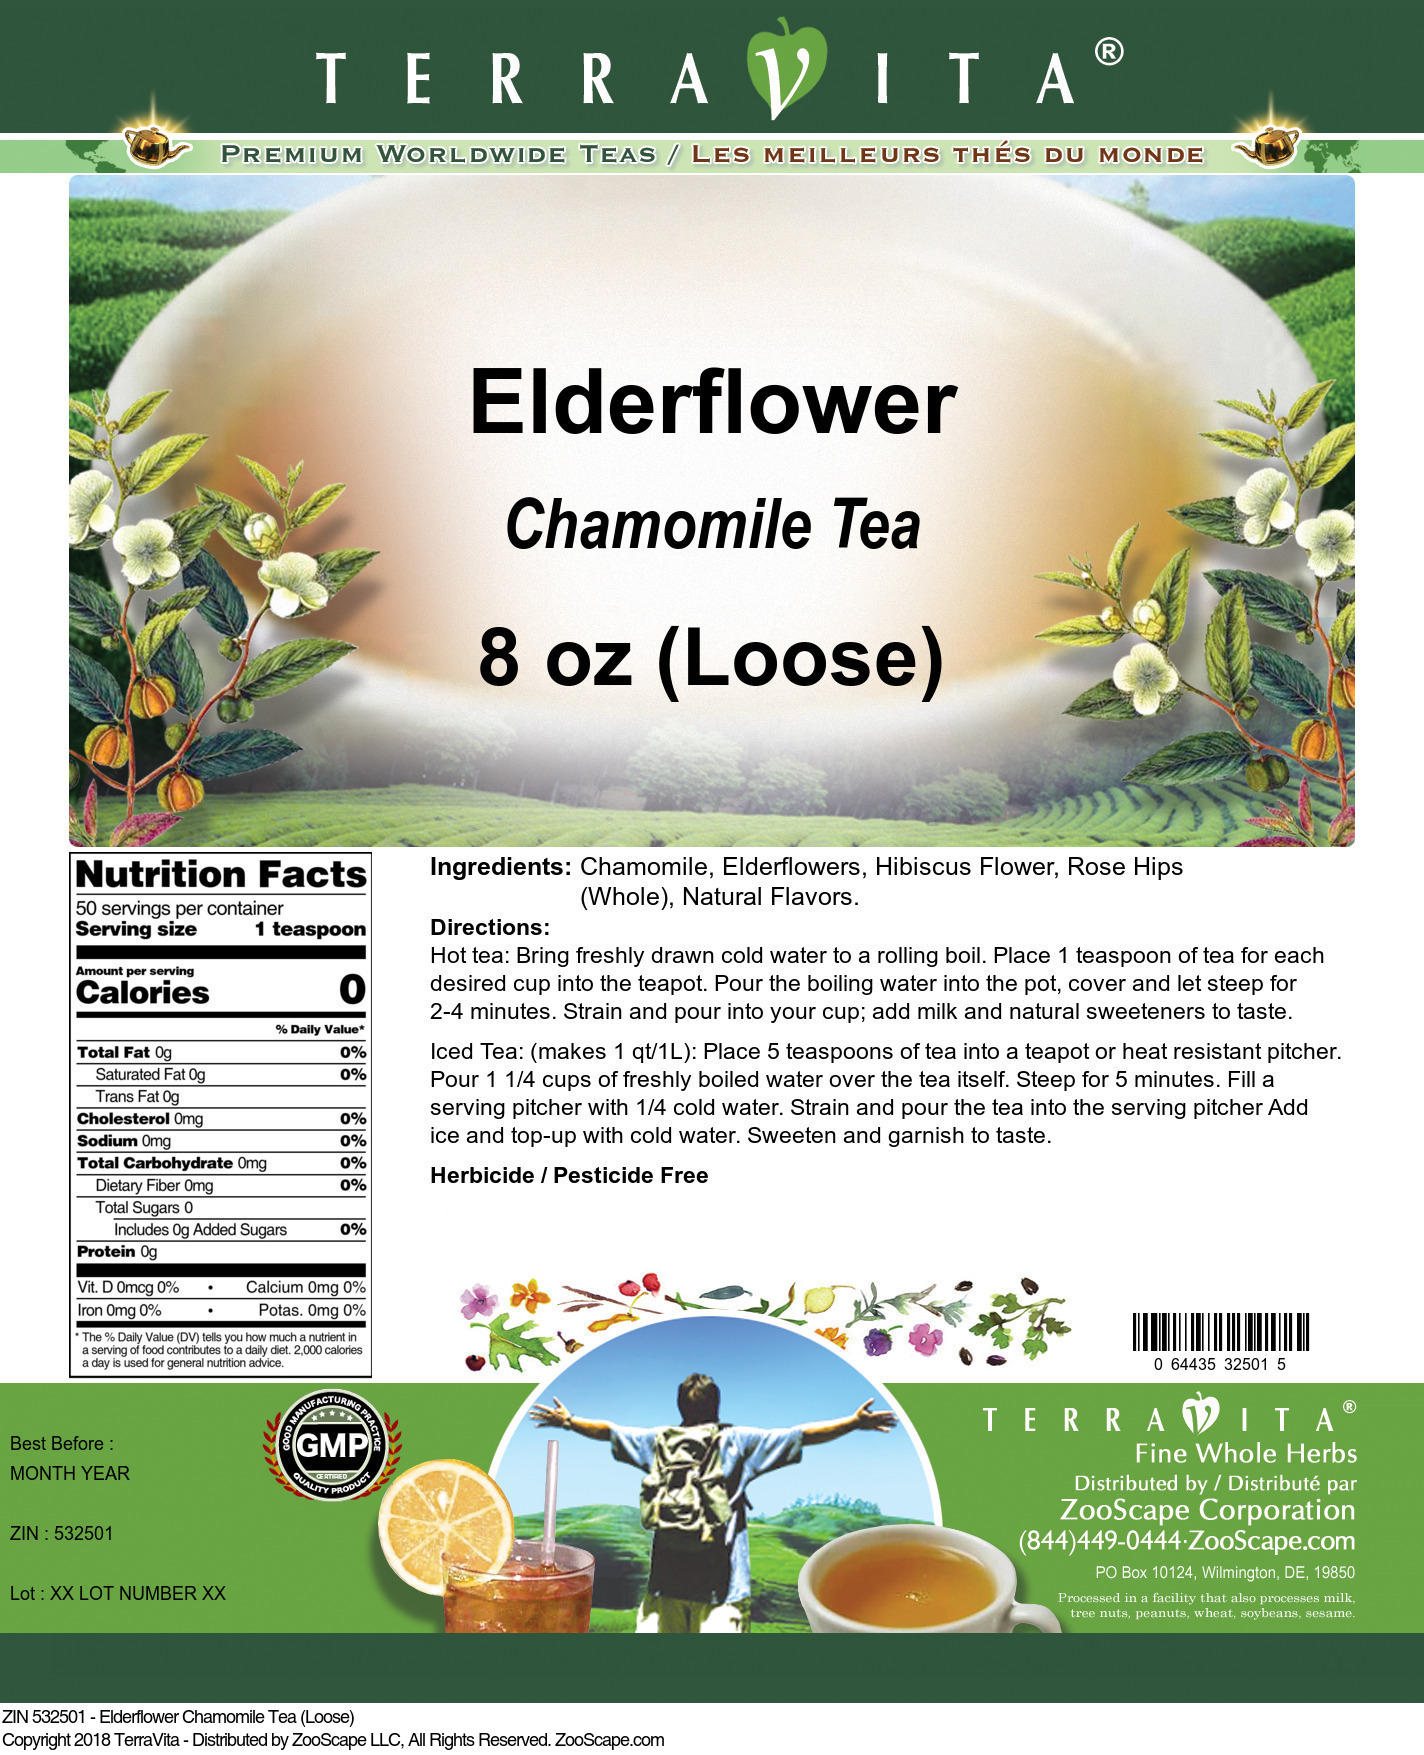 Elderflower Chamomile Tea (Loose) - Label